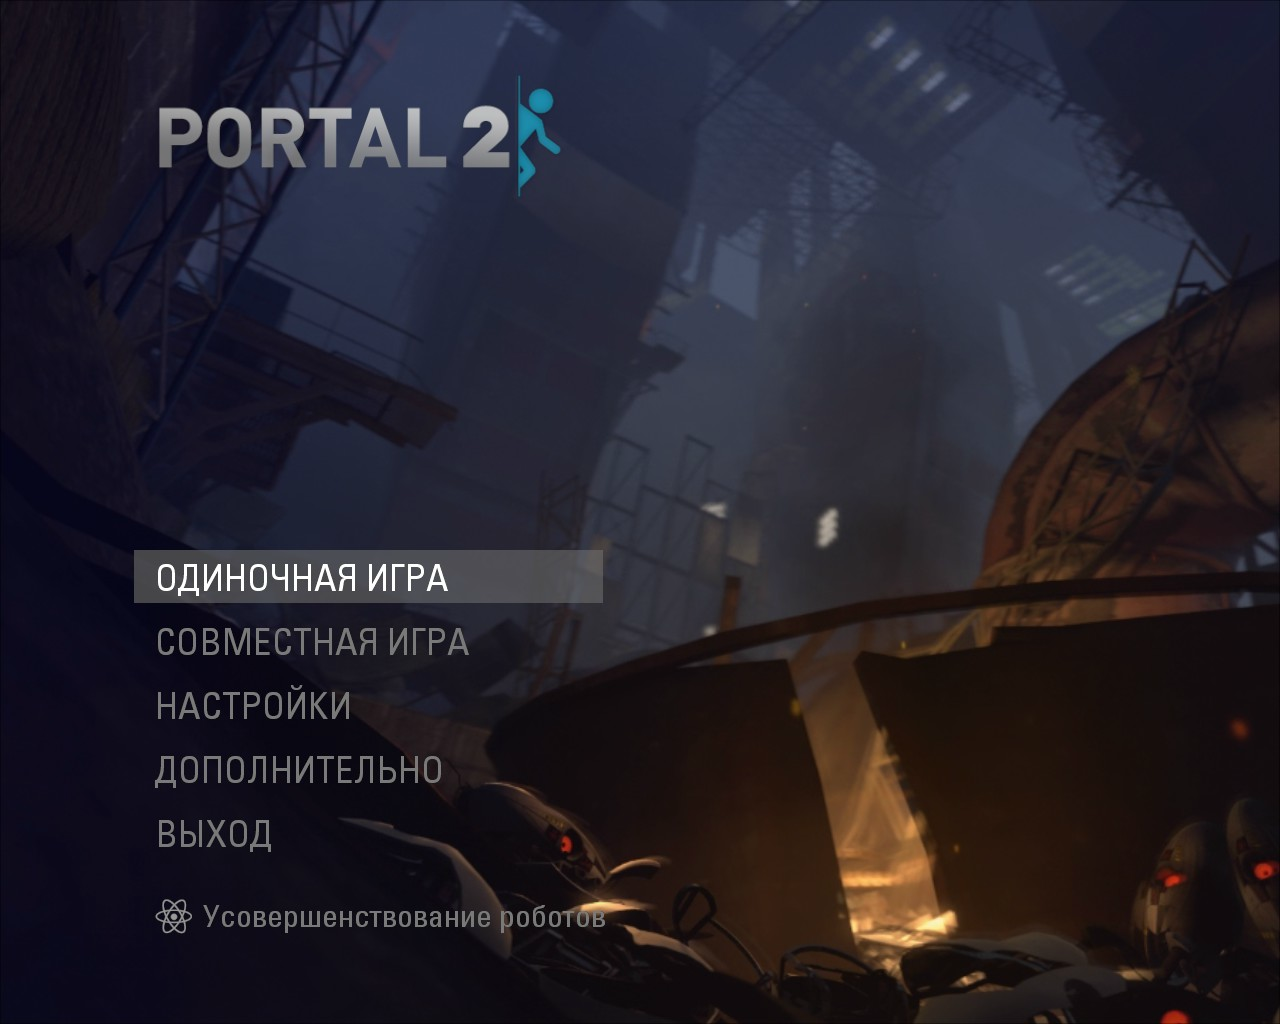 Portal 2 no menu фото 8